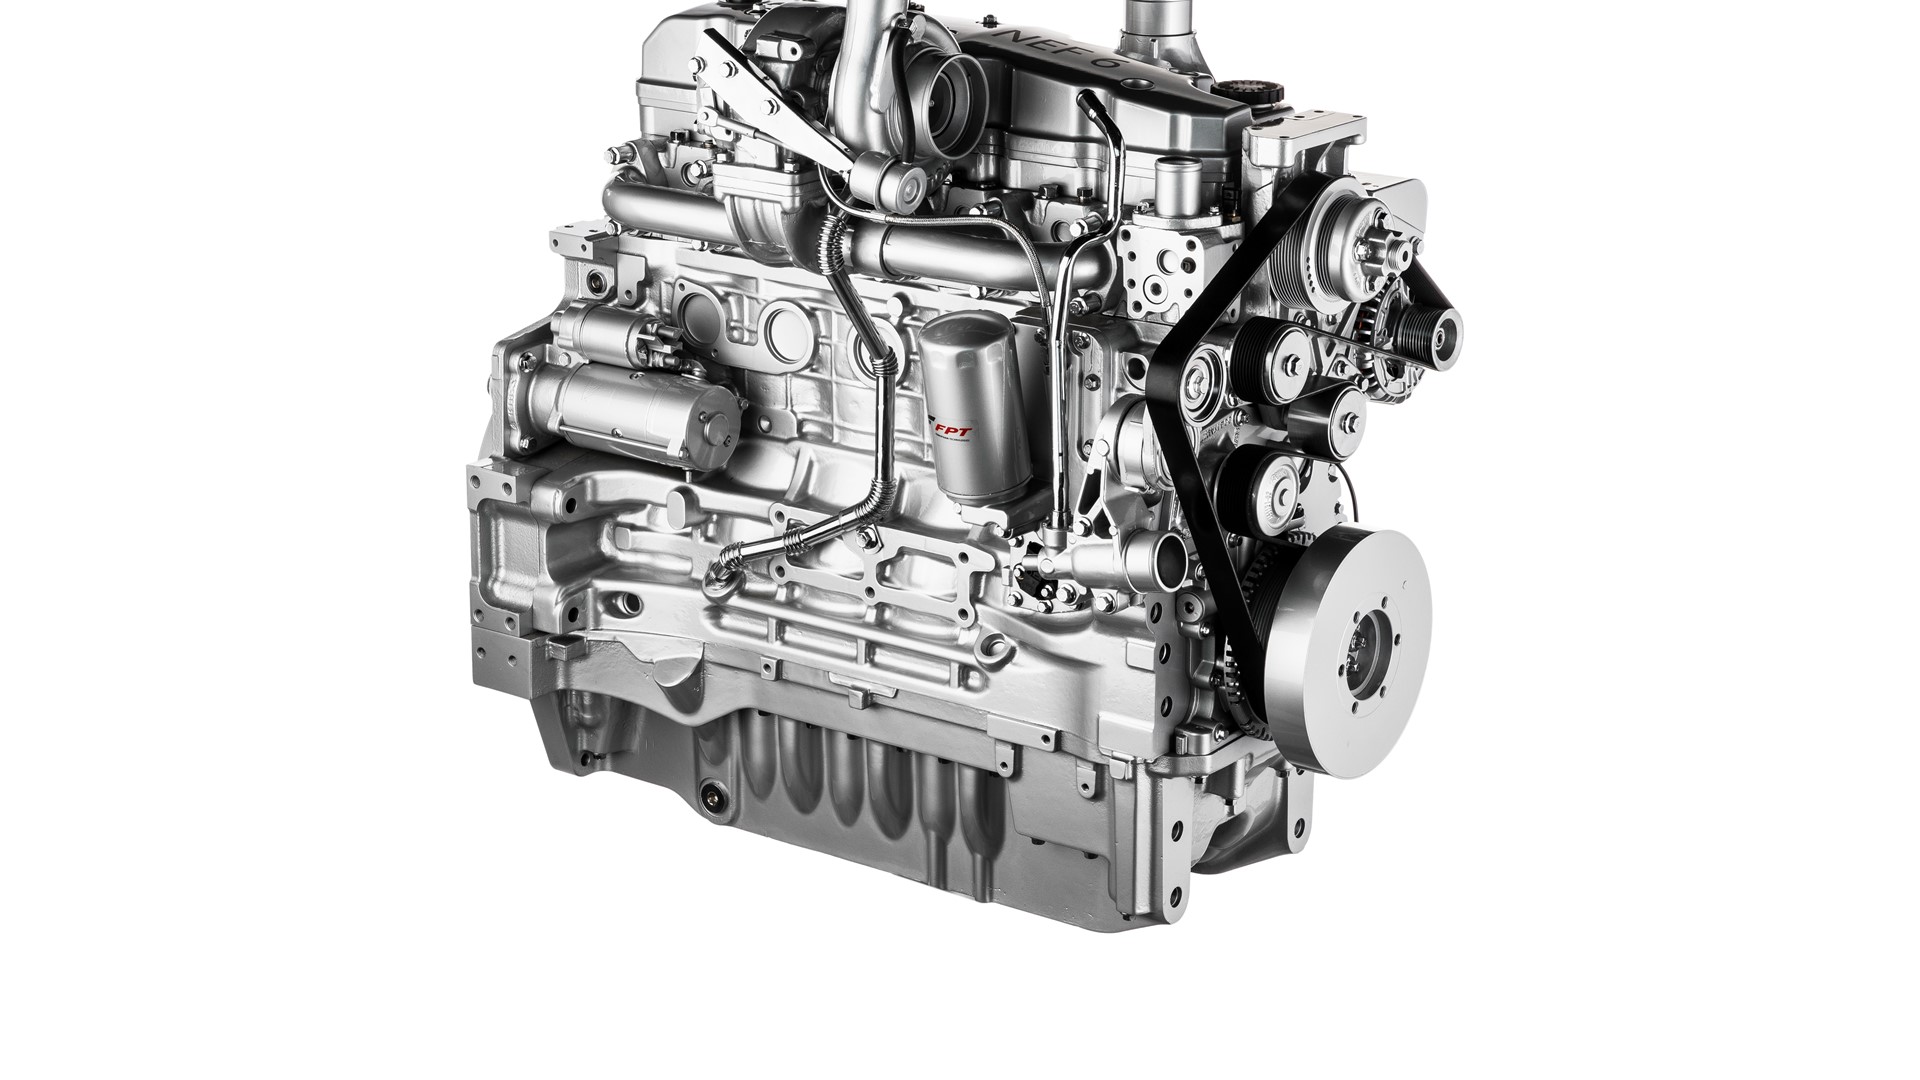 FPT Industrial N67 engine